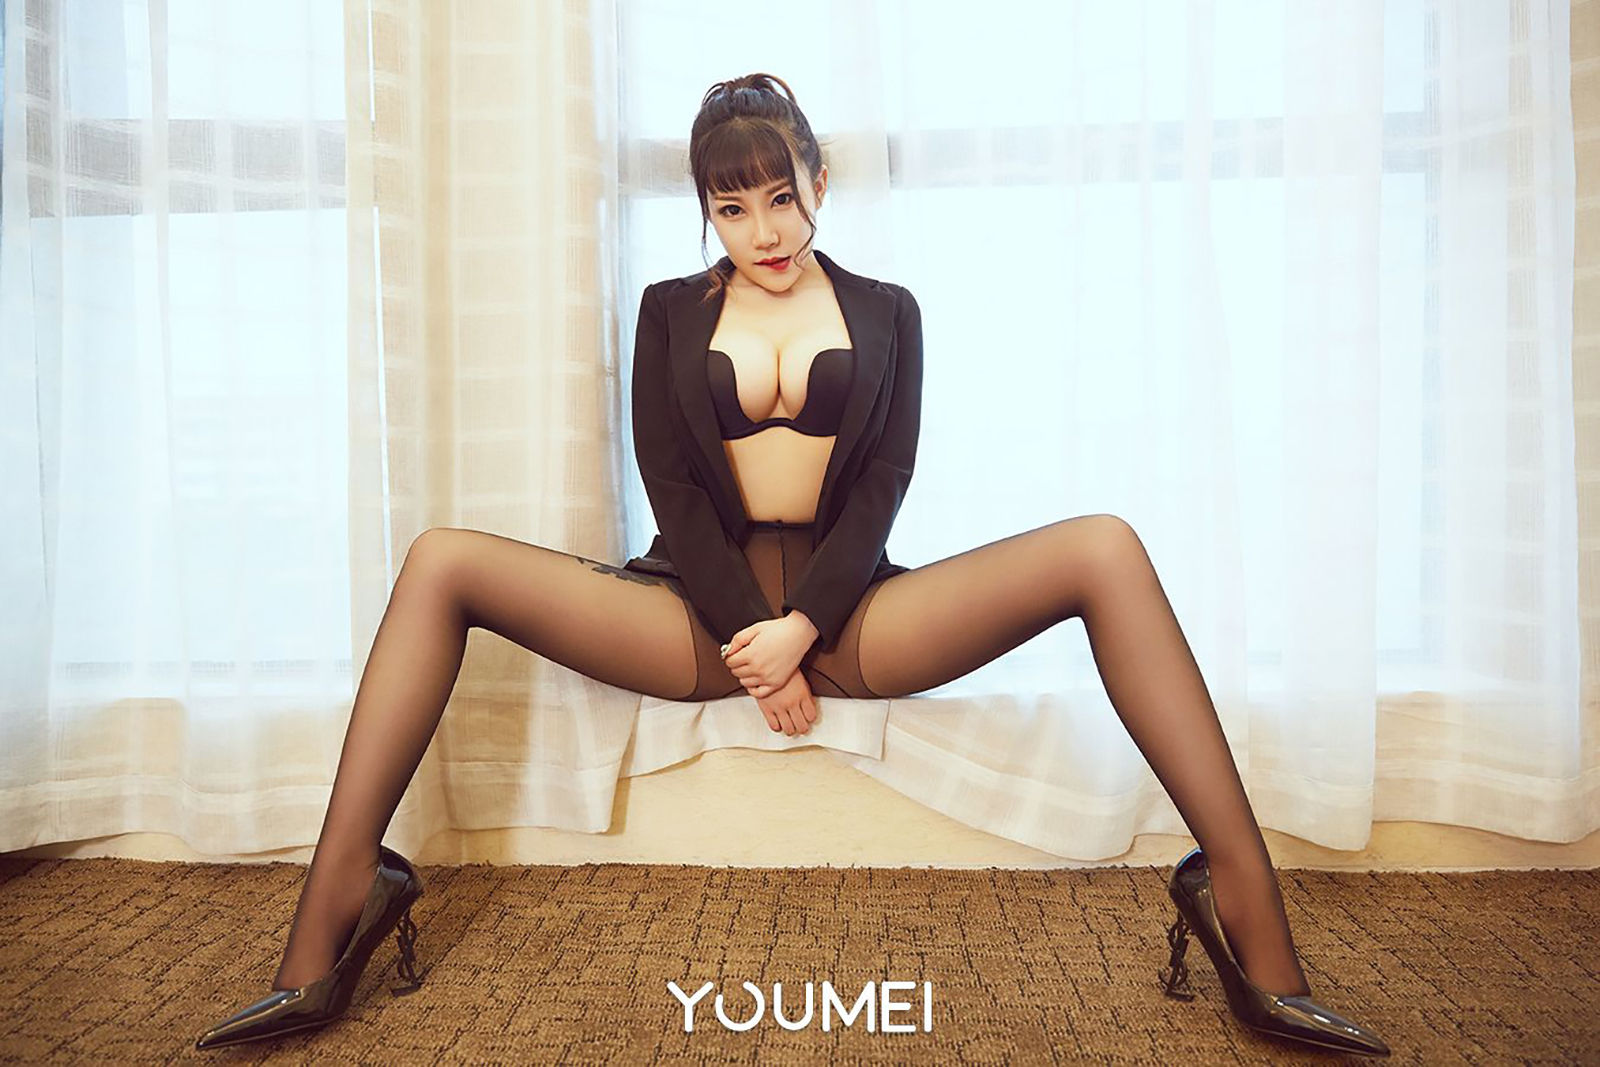 Youmei Youmei no.041, July 27, 2018